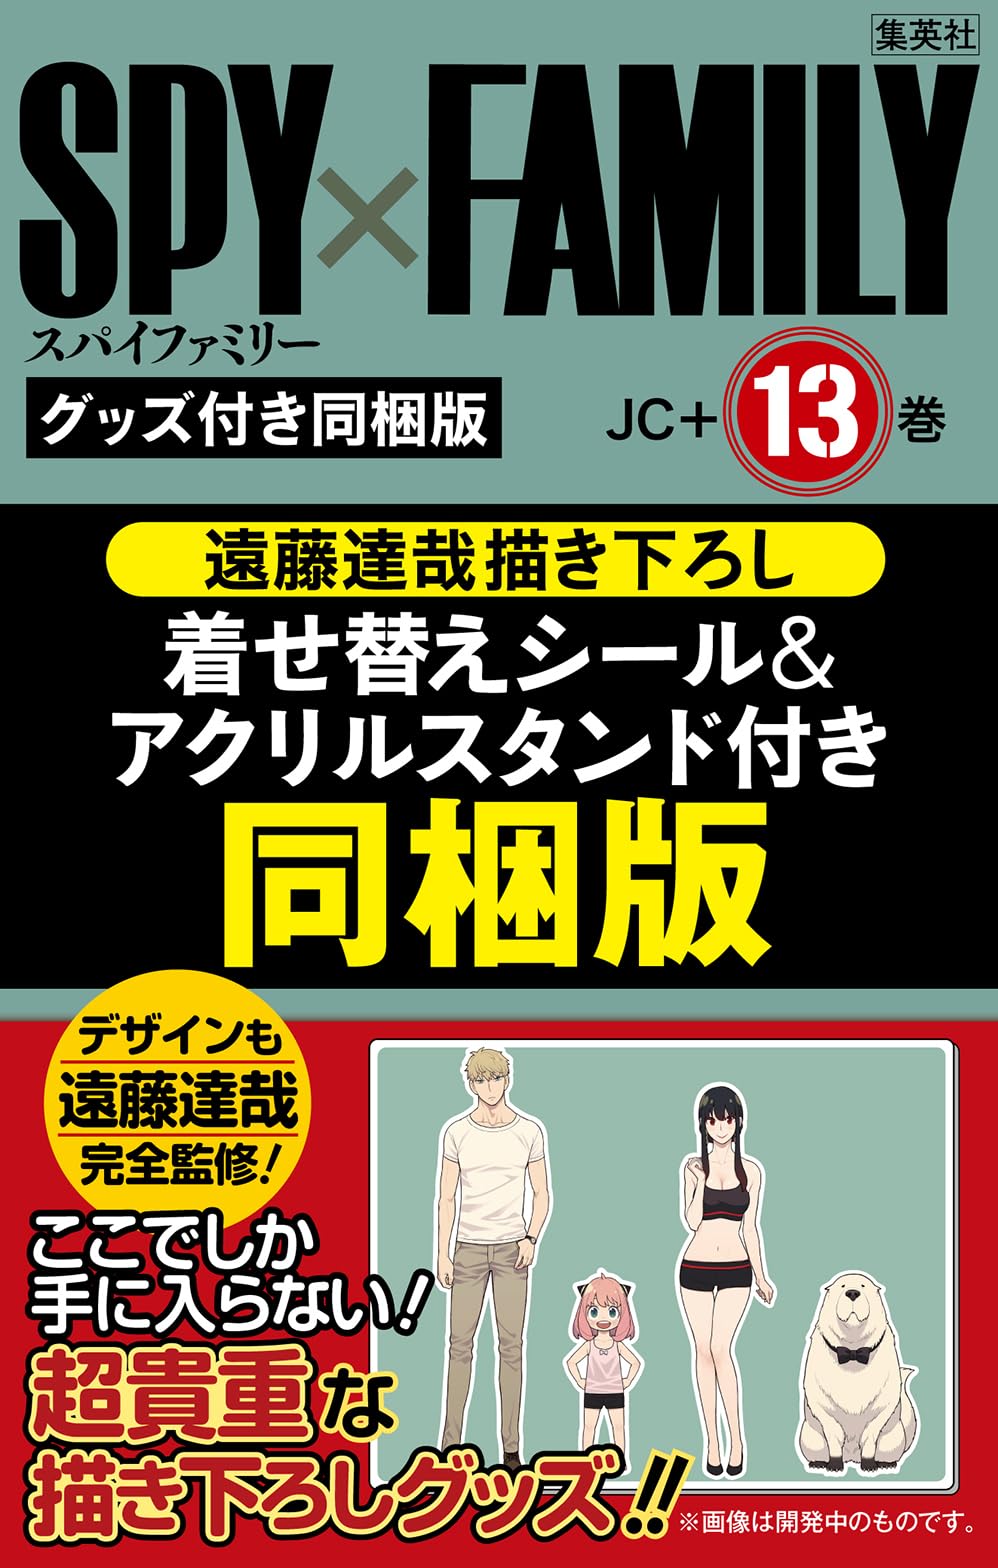 マンガ「SPY×FAMILY」13巻の発売日が2024年3月4日に変更 - GAME Watch